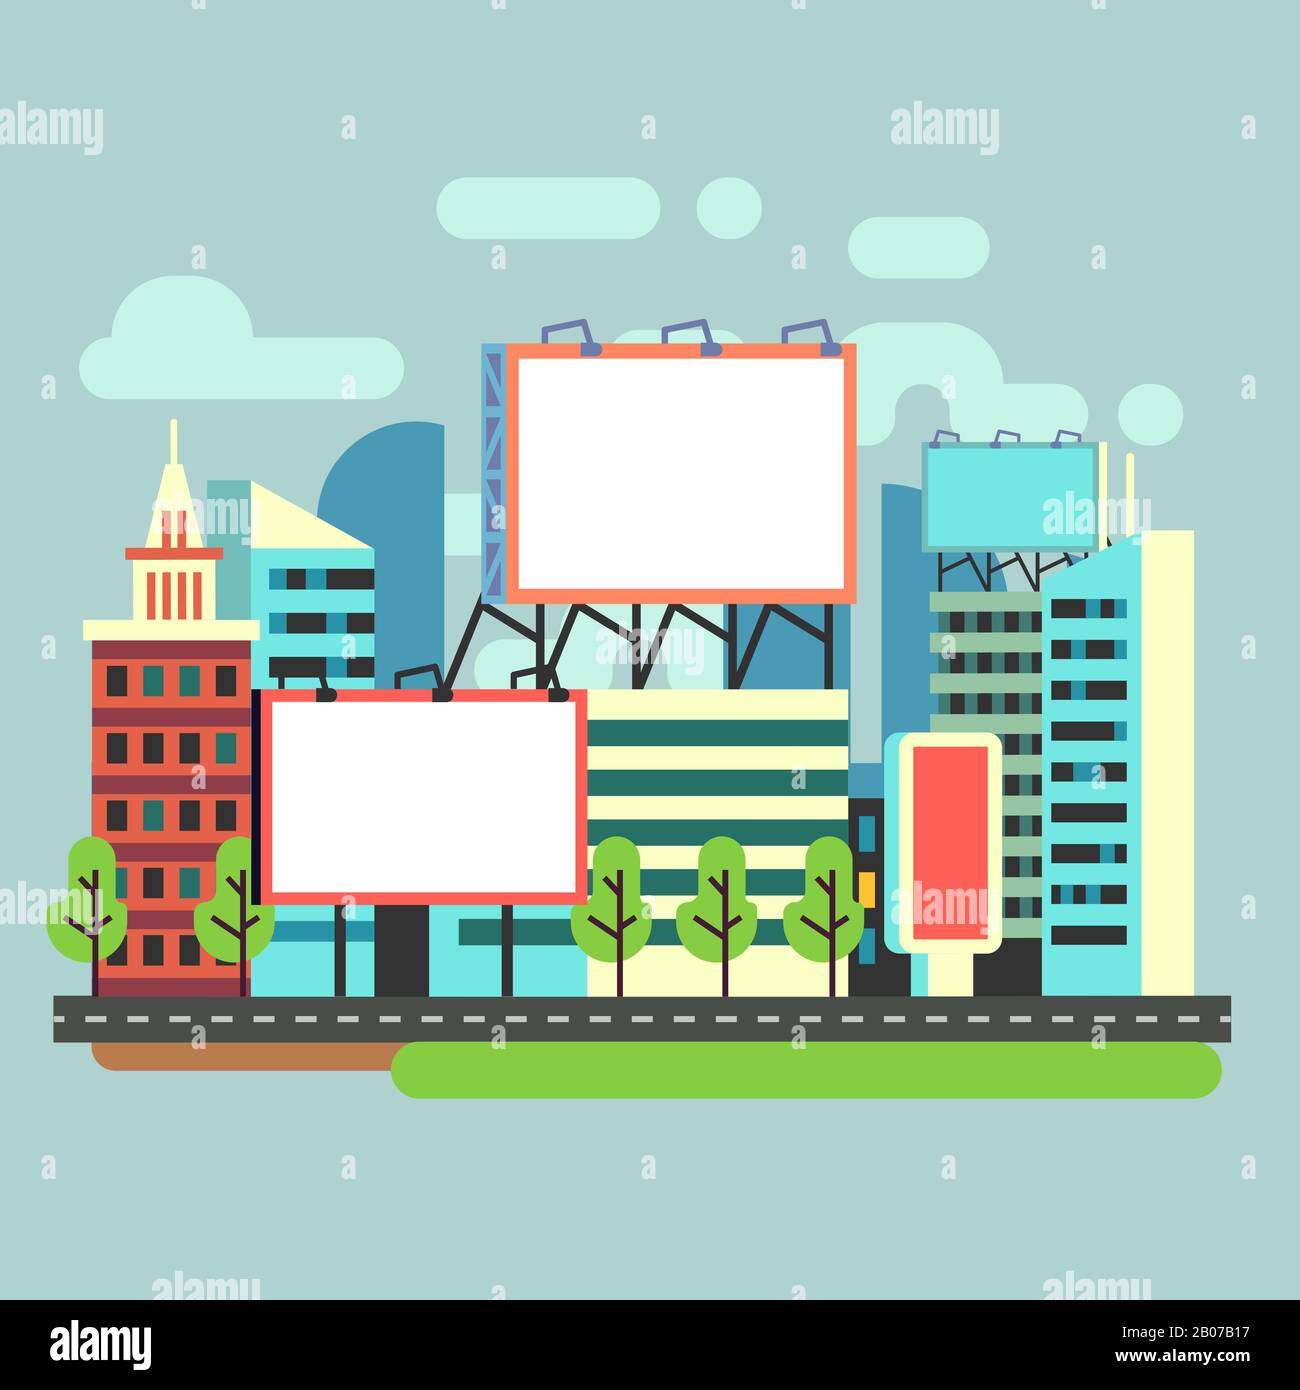 Panneaux publicitaires vides urbains dans une illustration vectorielle de ville plate. Bannière pour la publicité promotionnelle Illustration de Vecteur